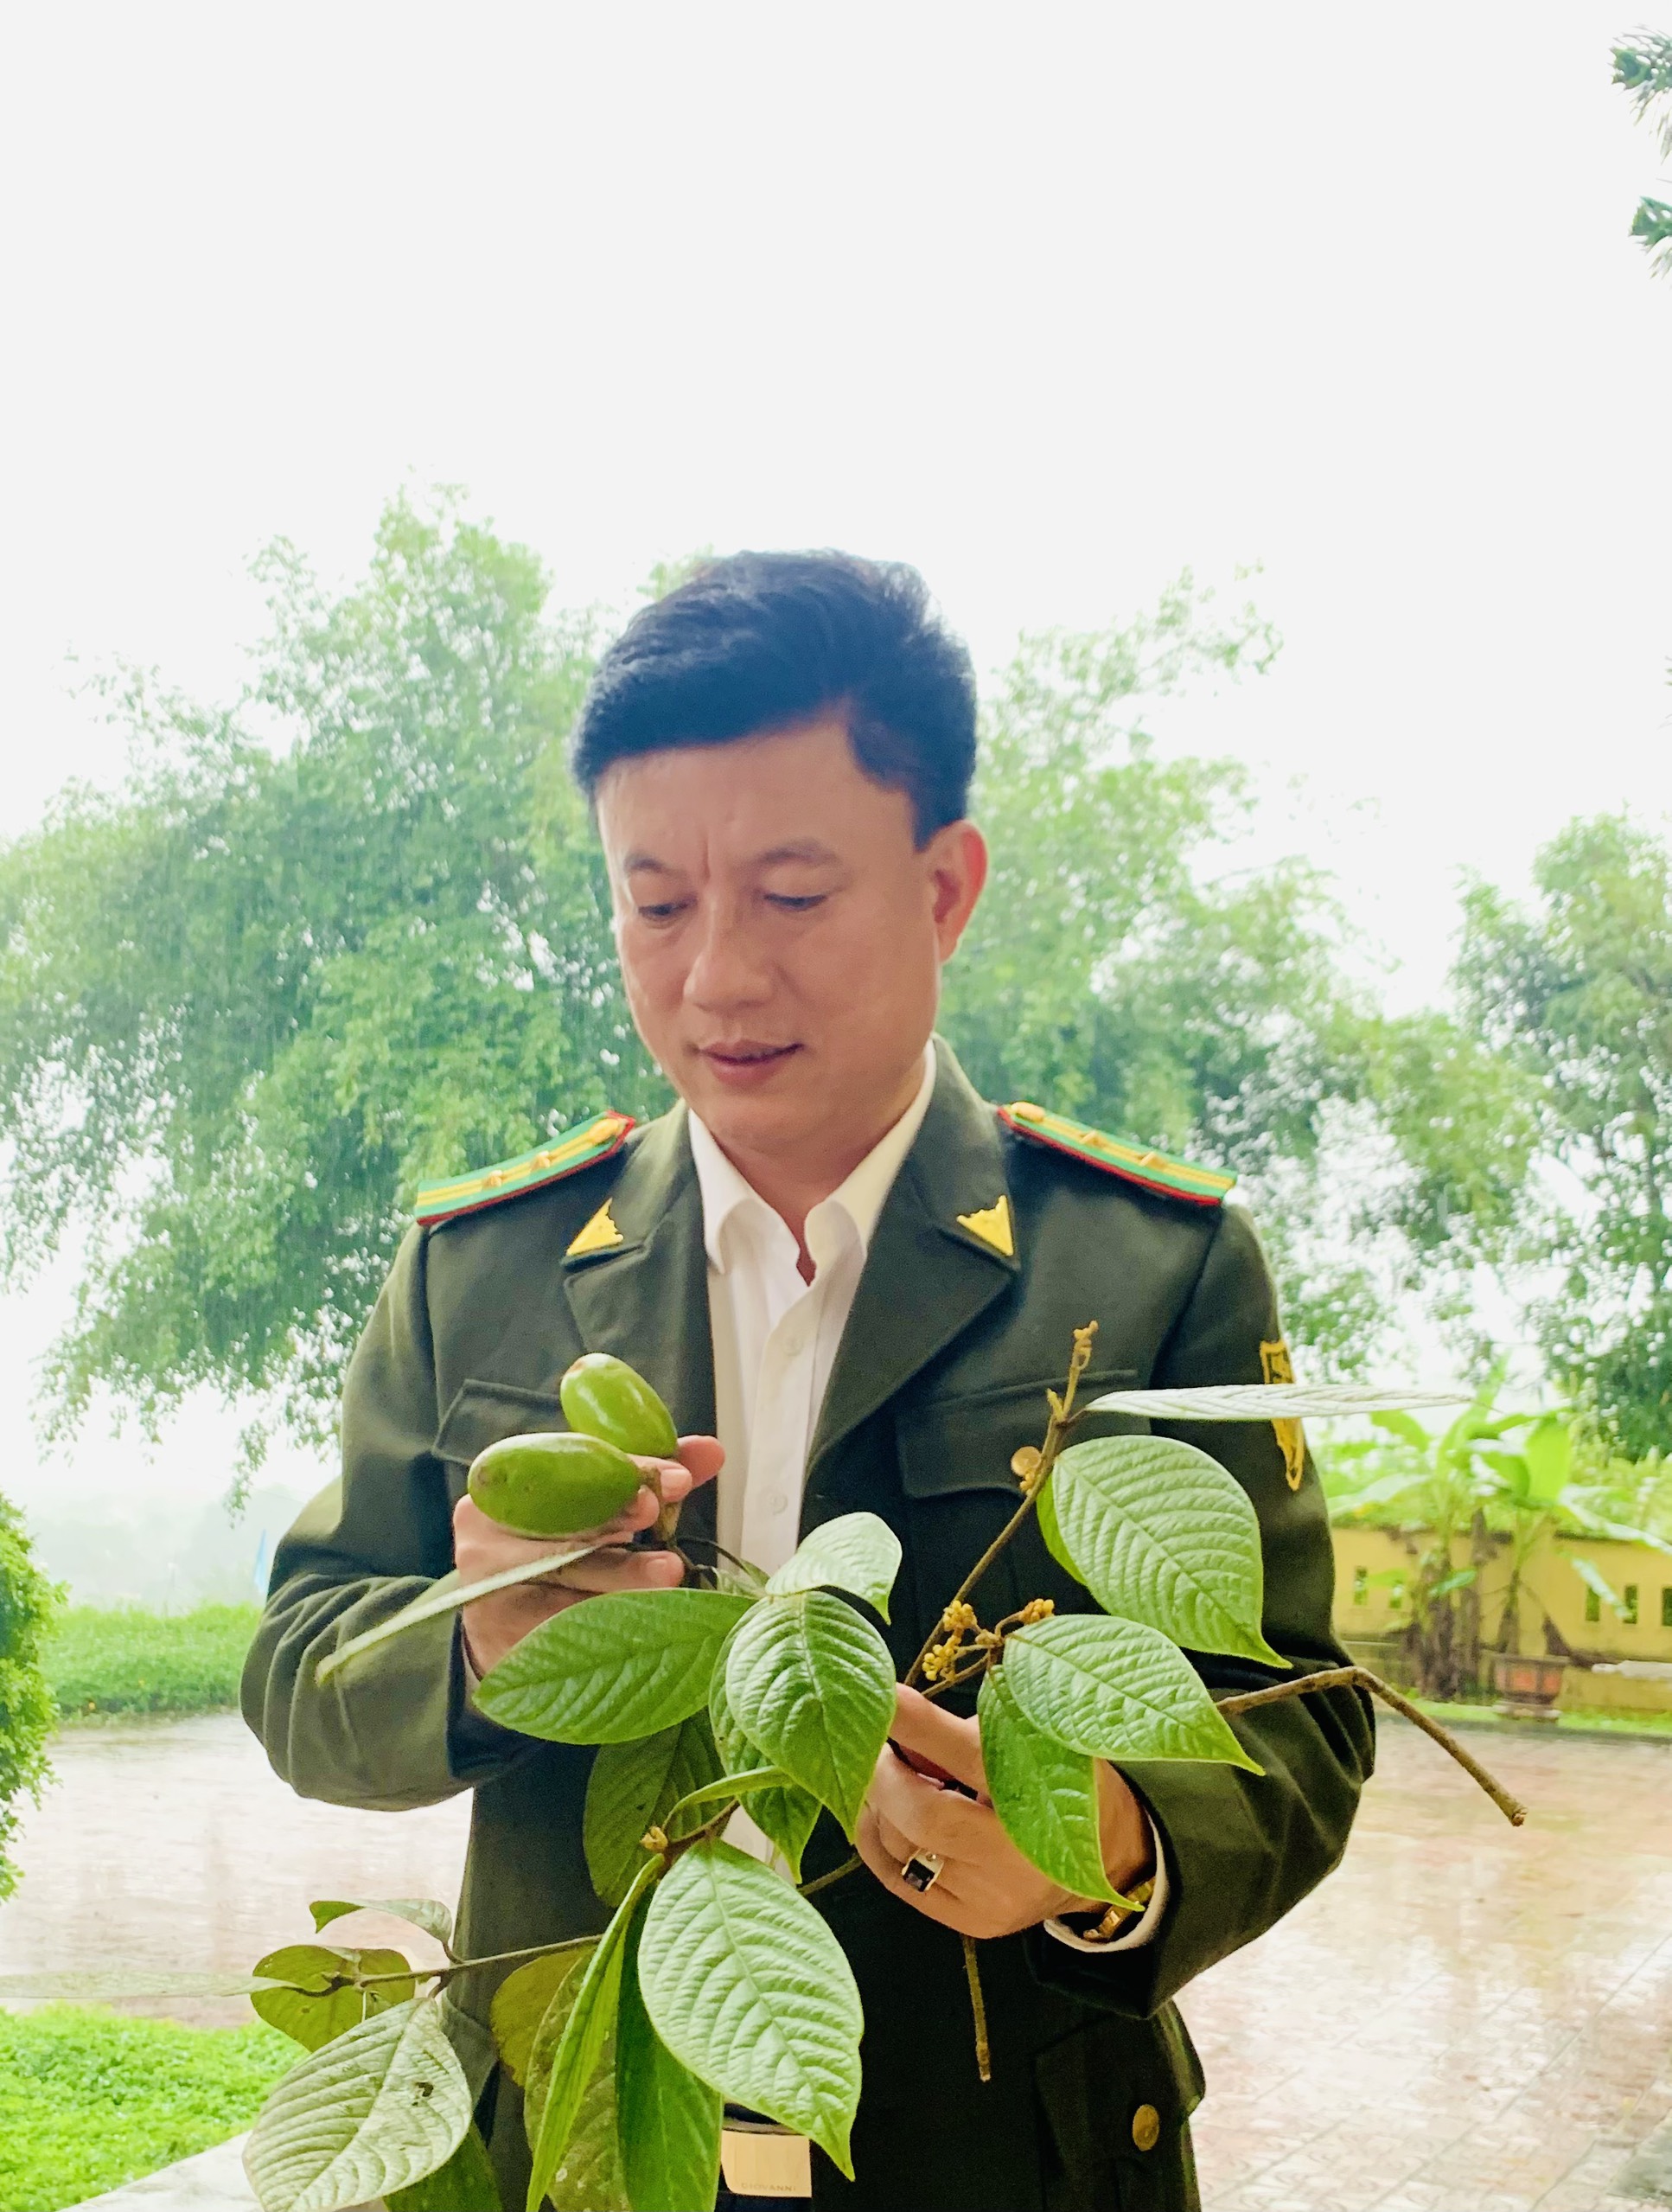 beilschmiedia danhkyii một loài thực vật mới cho thế giới khoa học được phát hiện tại Vườn Quốc gia Vũ Quang - Hà Tĩnh